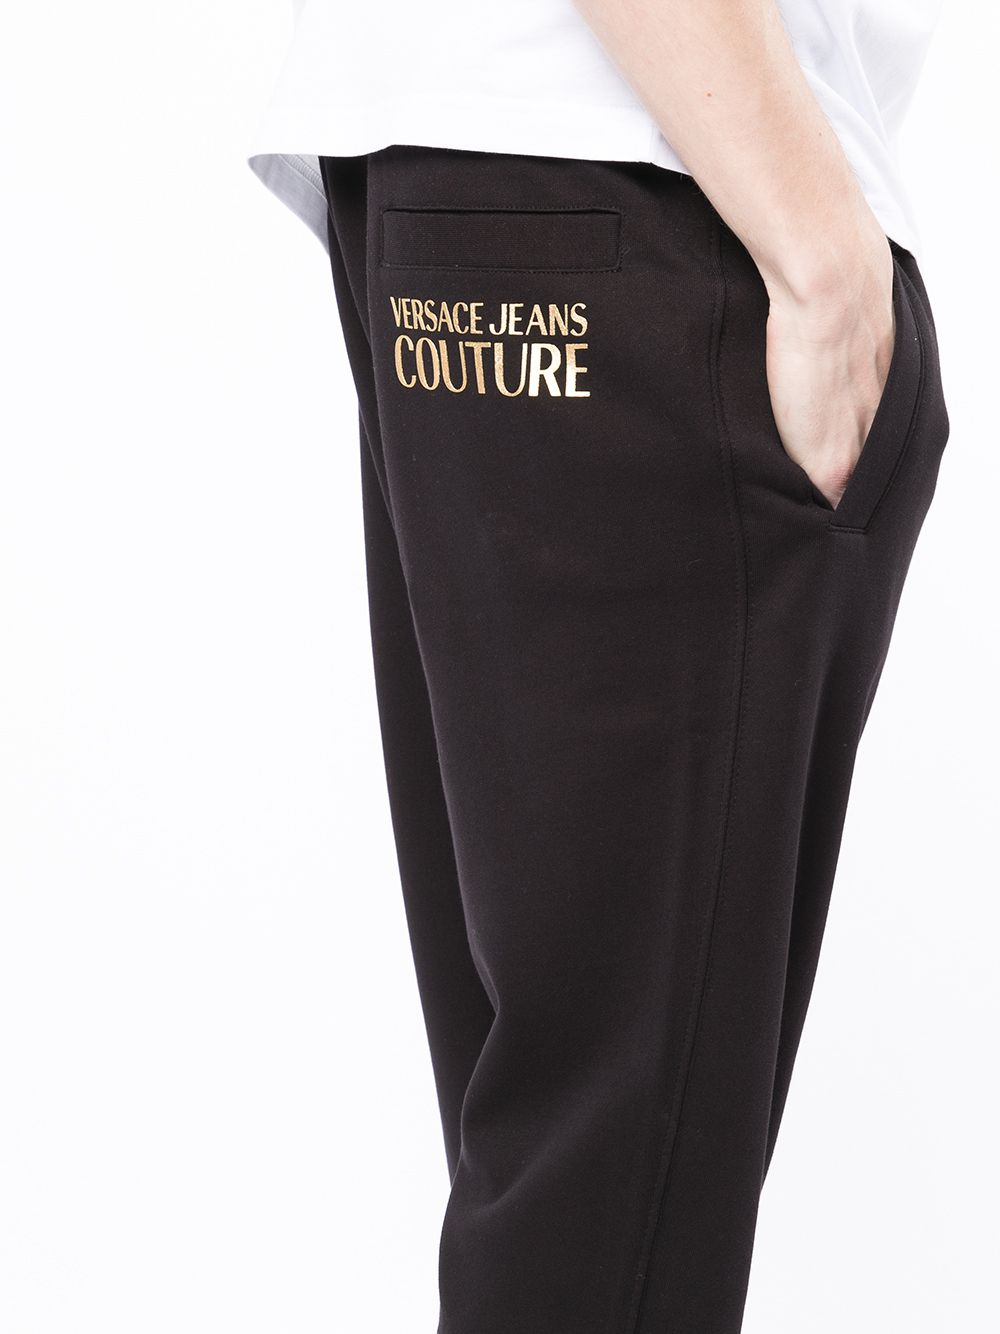 фото Versace jeans couture спортивные брюки с логотипом